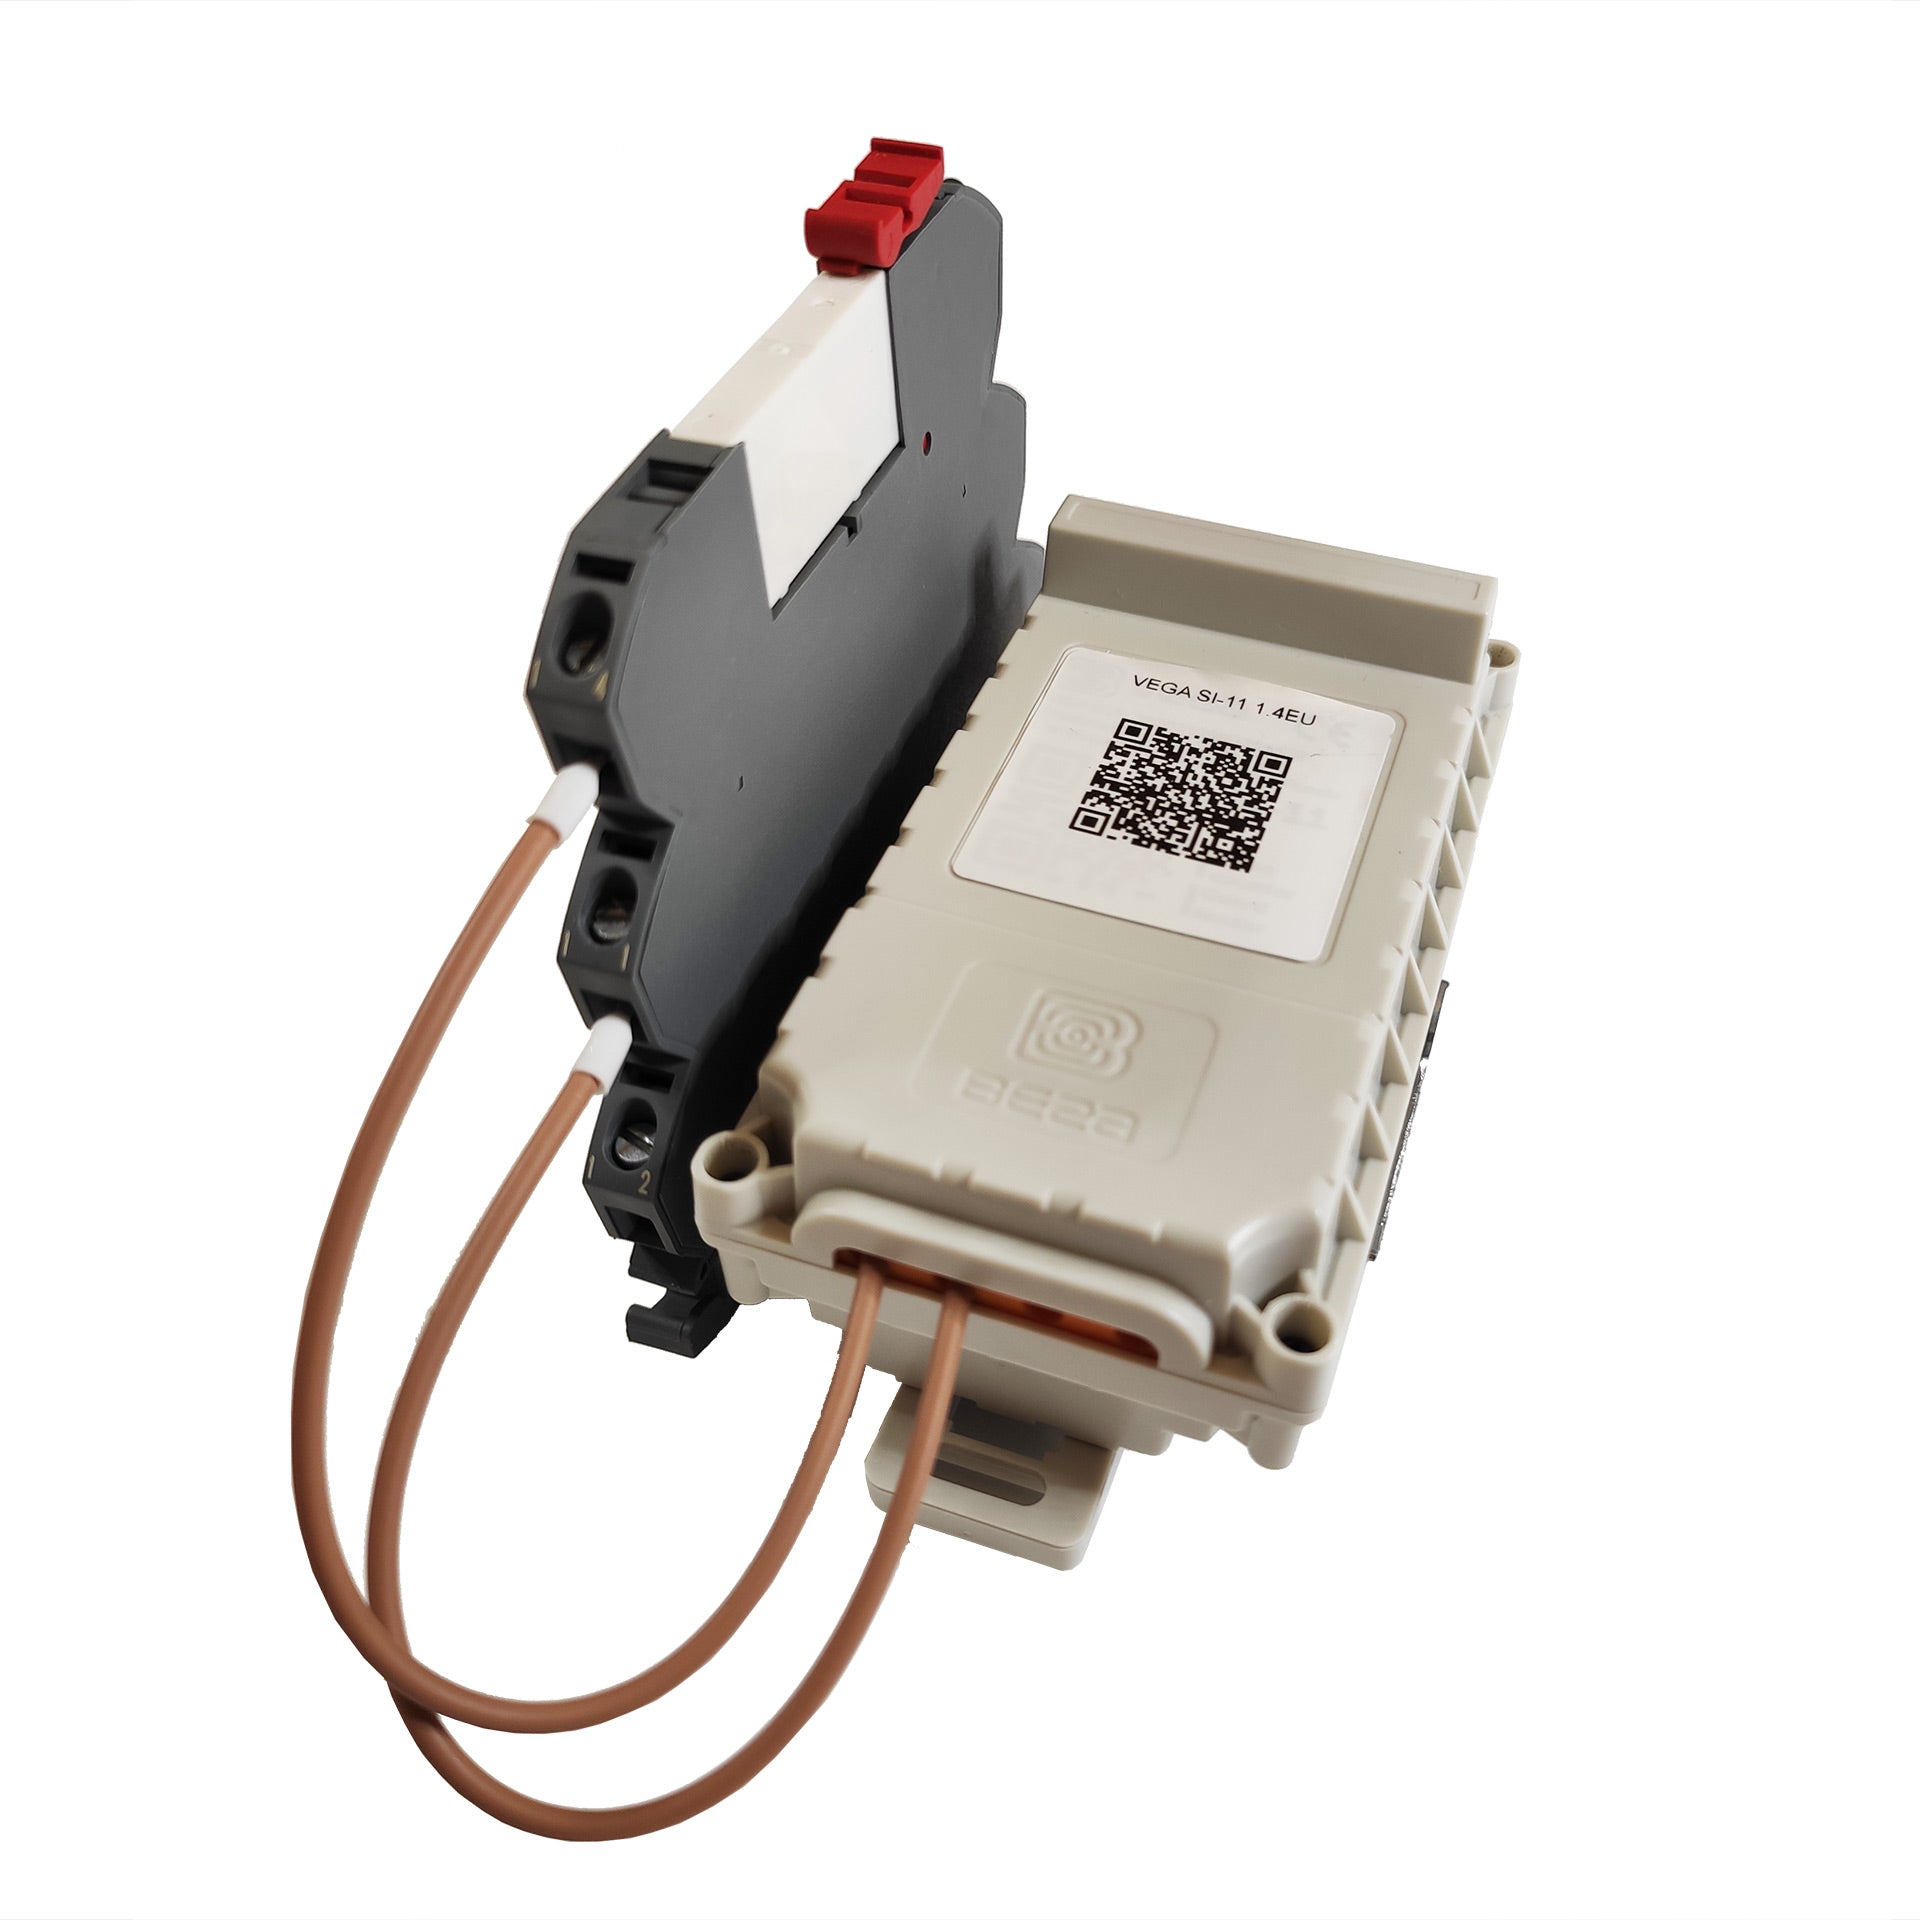 Shore power sensor for Smartconnect unit